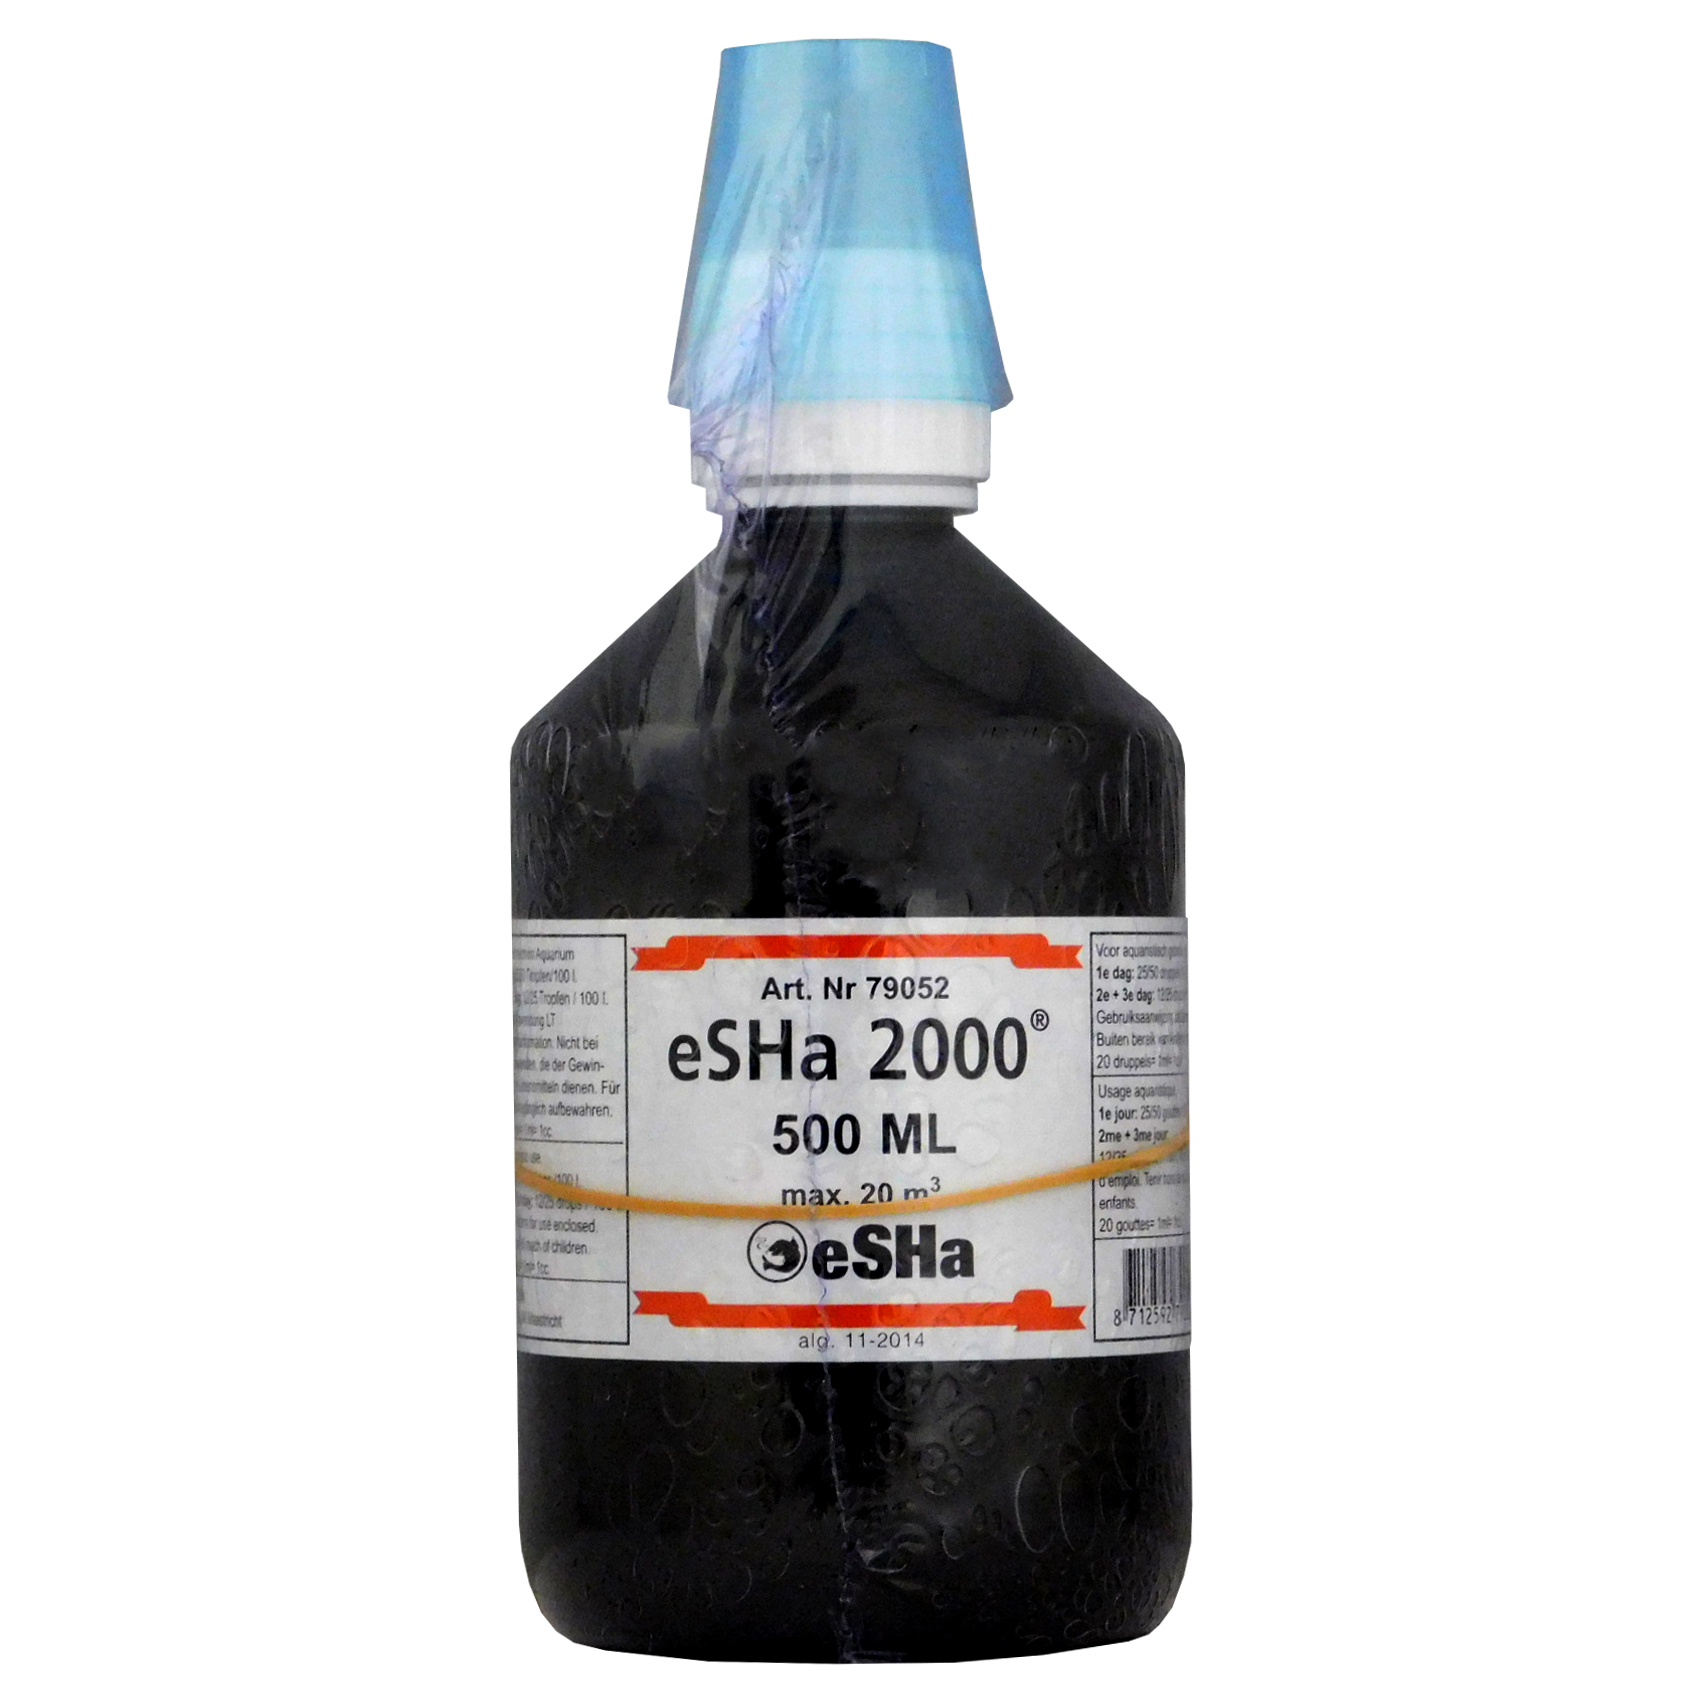 eSHa 2000 Finrot & Bacteria - Petstop